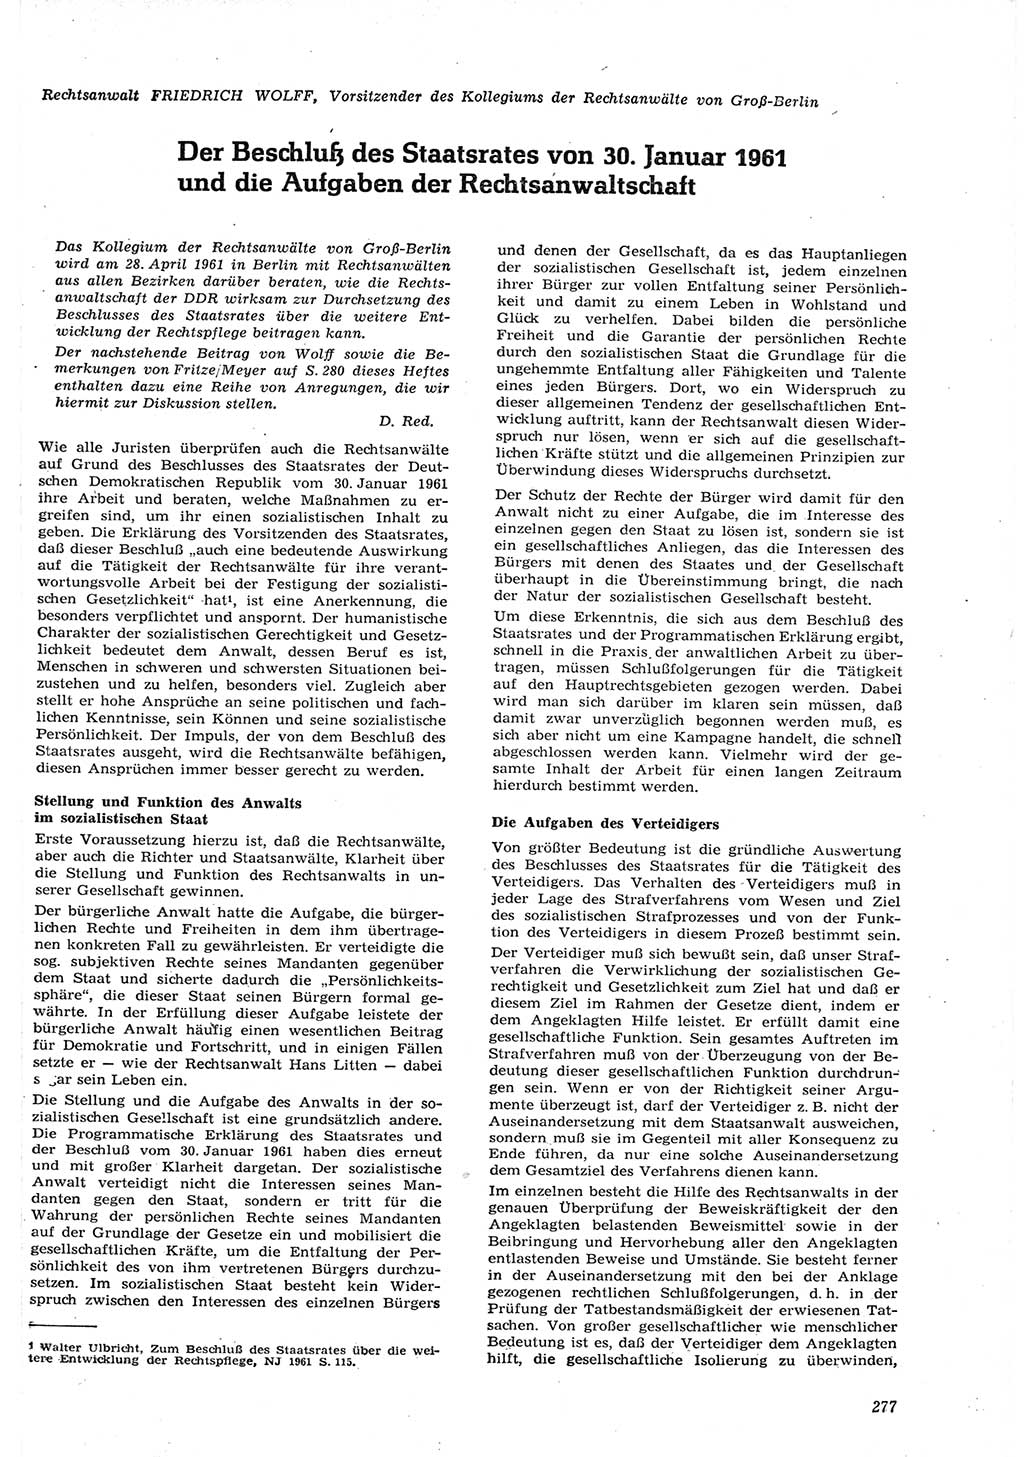 Neue Justiz (NJ), Zeitschrift für Recht und Rechtswissenschaft [Deutsche Demokratische Republik (DDR)], 15. Jahrgang 1961, Seite 277 (NJ DDR 1961, S. 277)